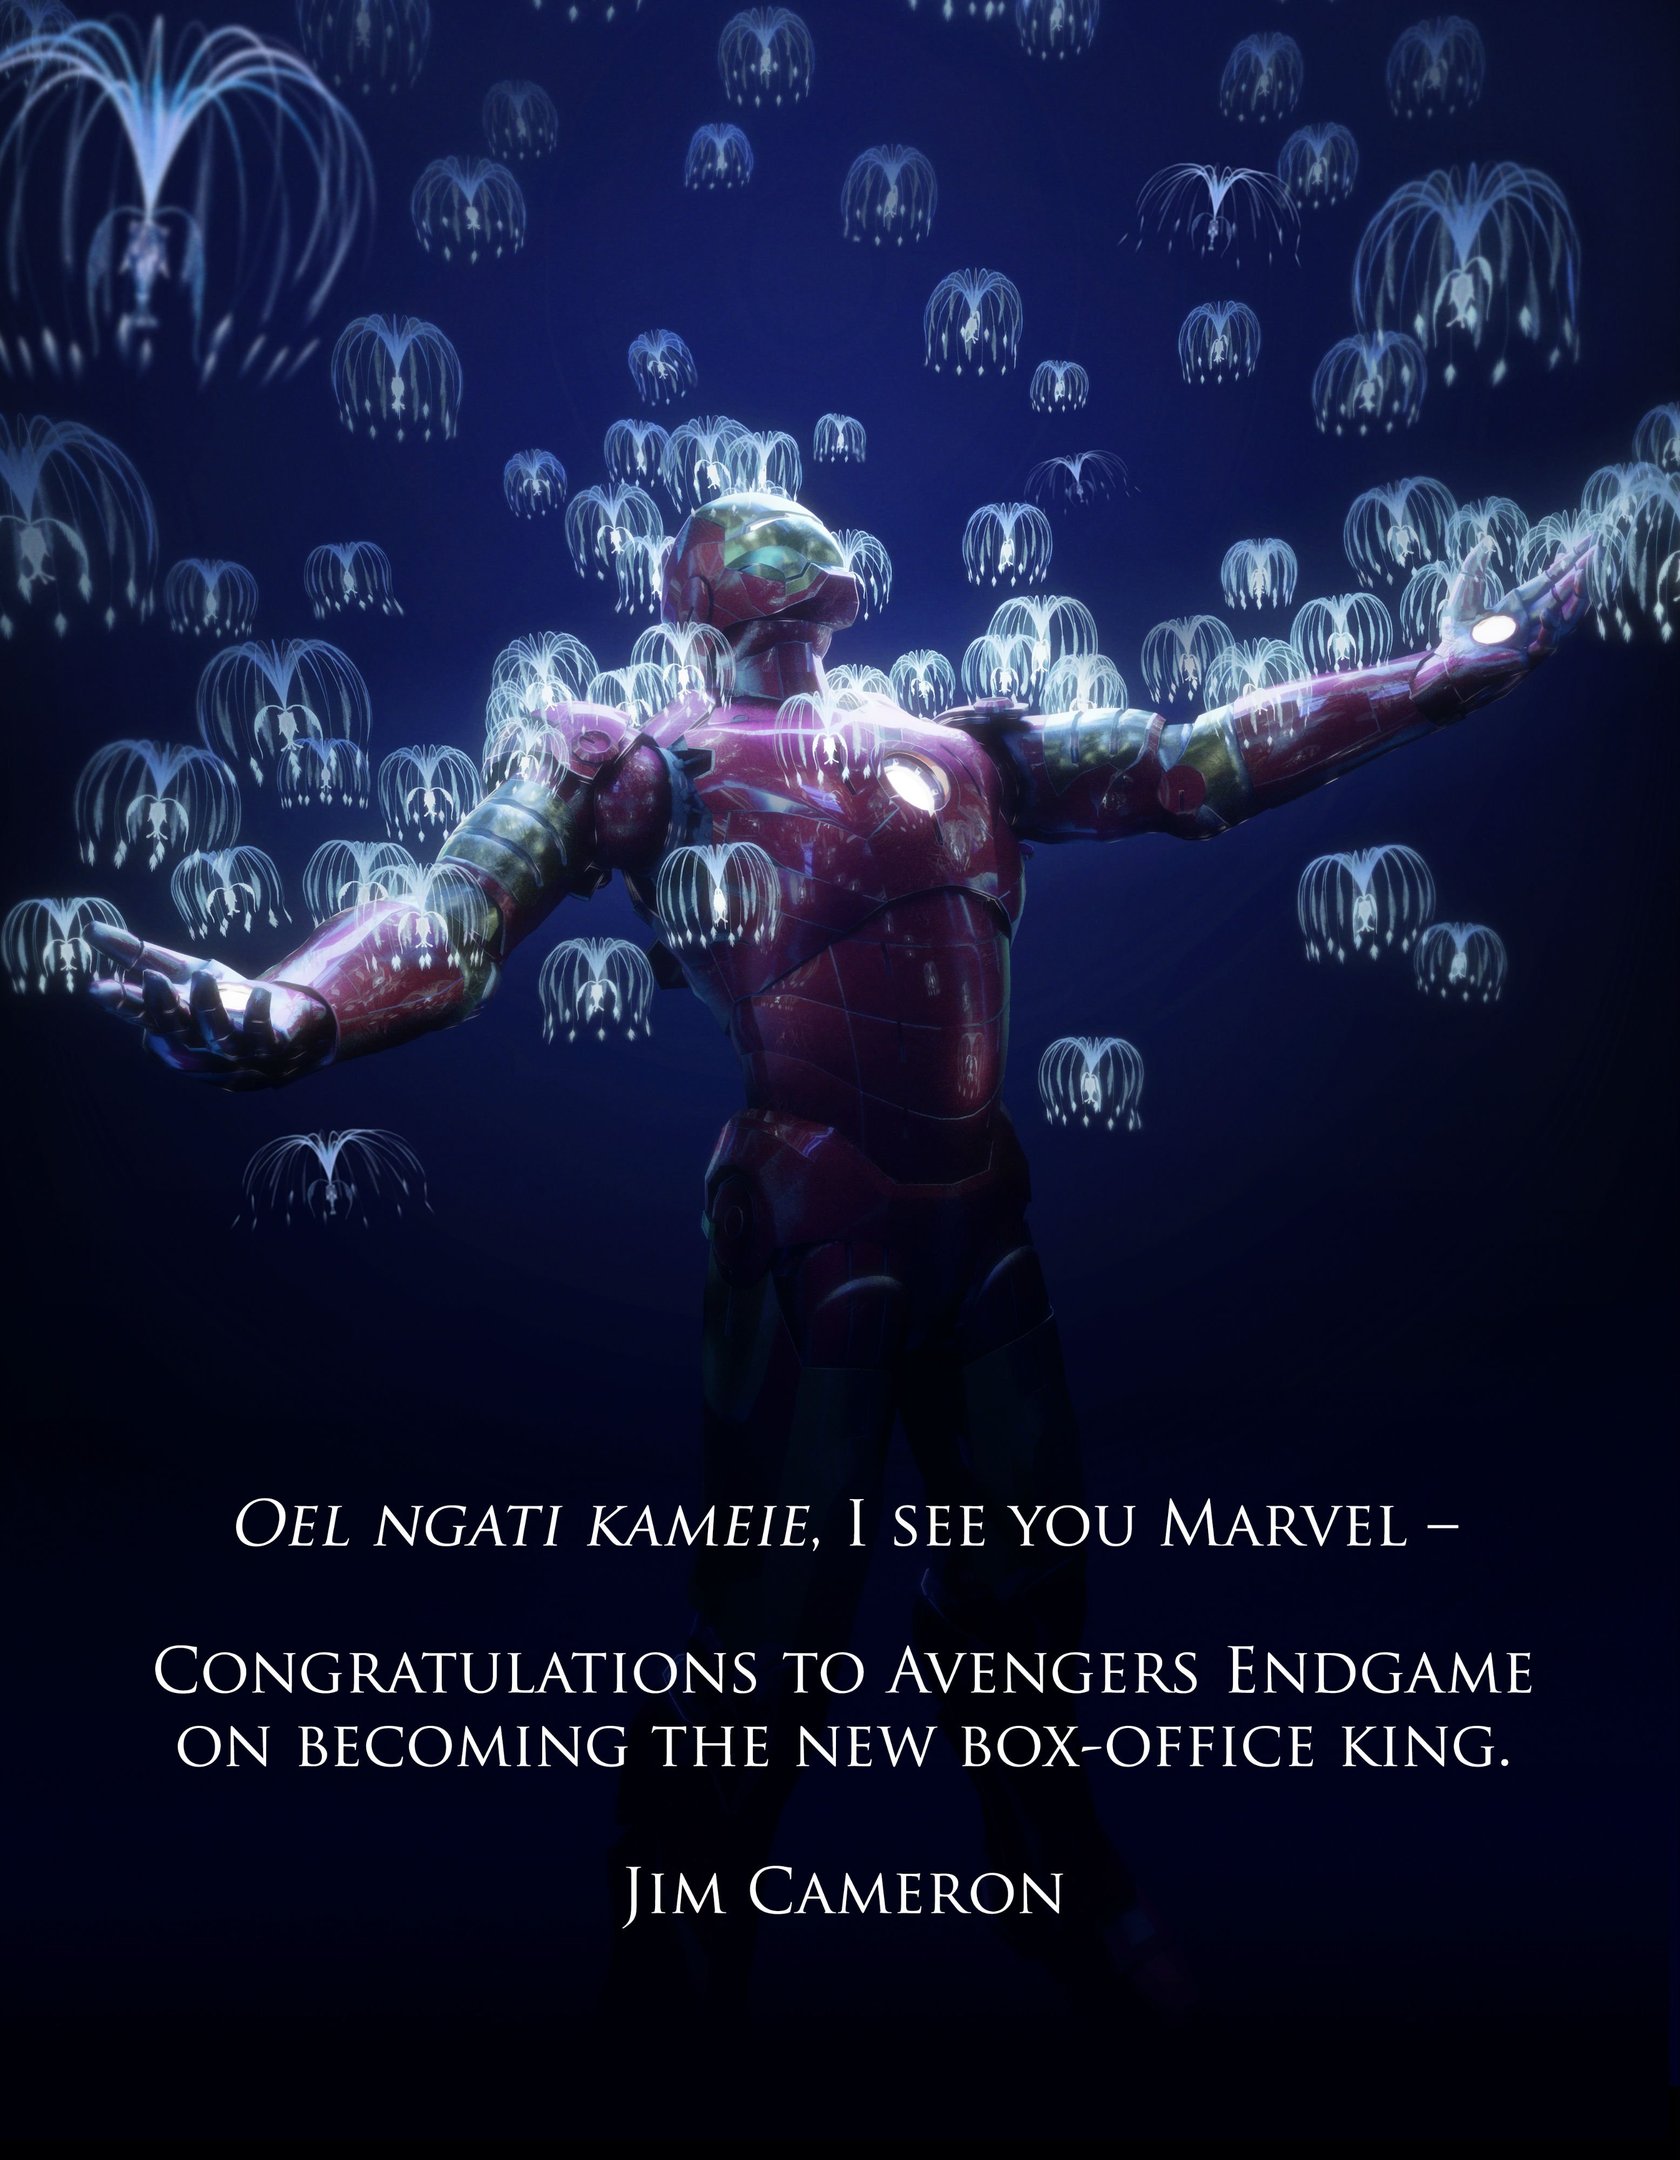 Imagem compartilhada por James Cameron para parabenizar Vingadores: Ultimato, após esse último se tornar a maior bilheteria nos cinemas